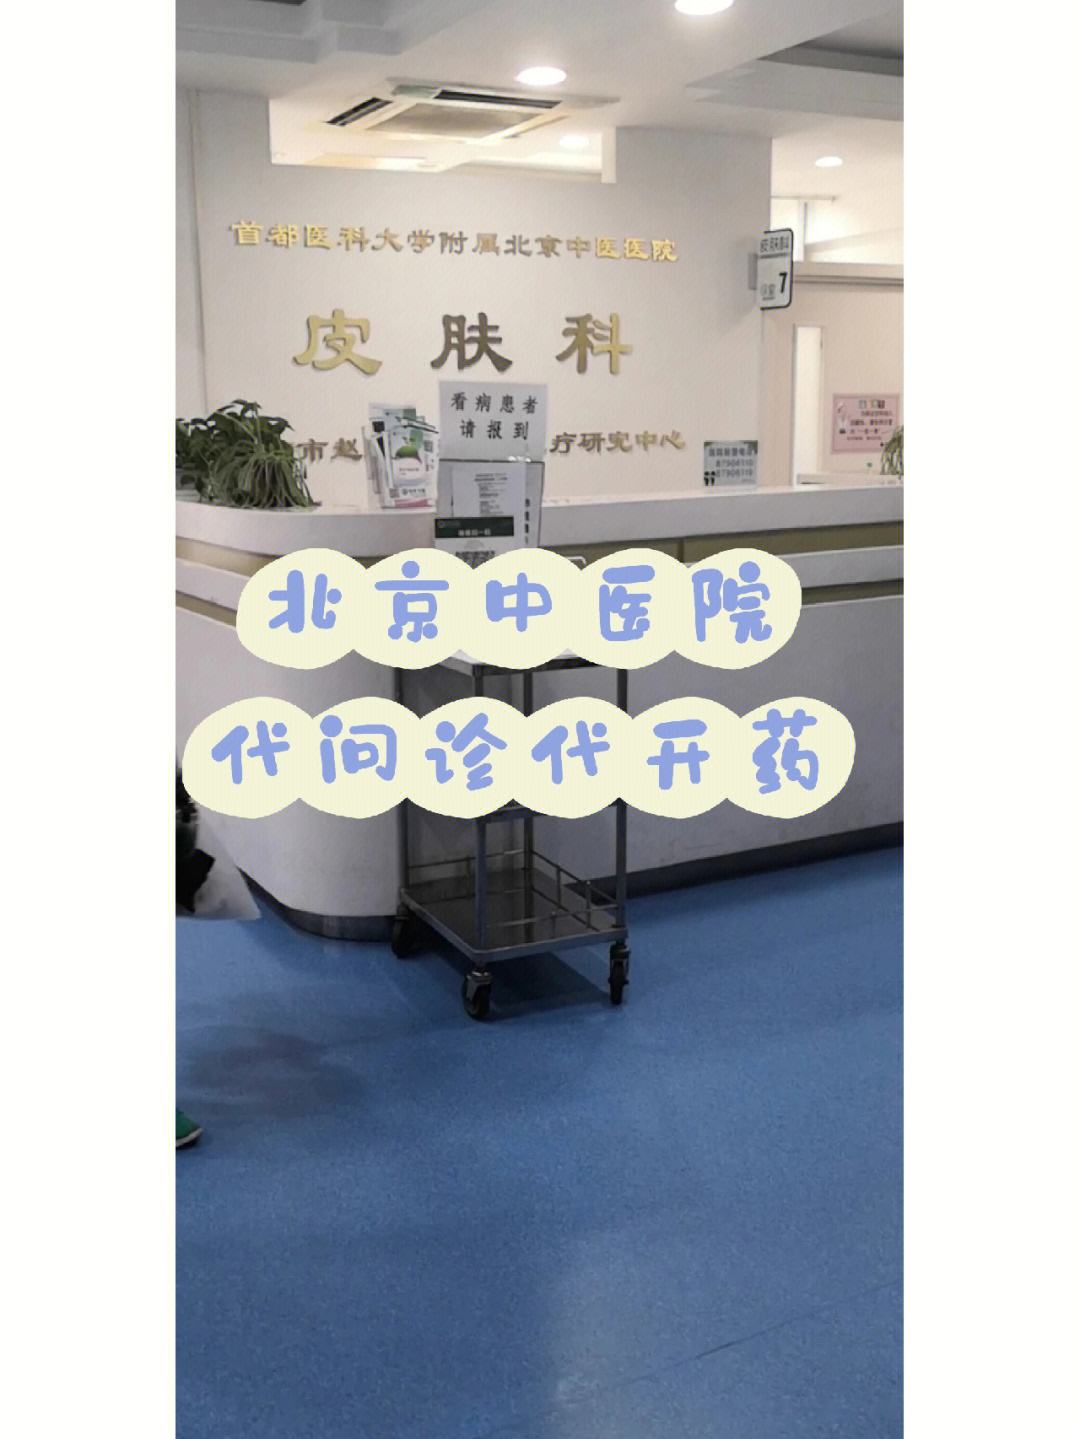 包含上海市中医医院医院跑腿陪诊挂号，助您医路轻松的词条